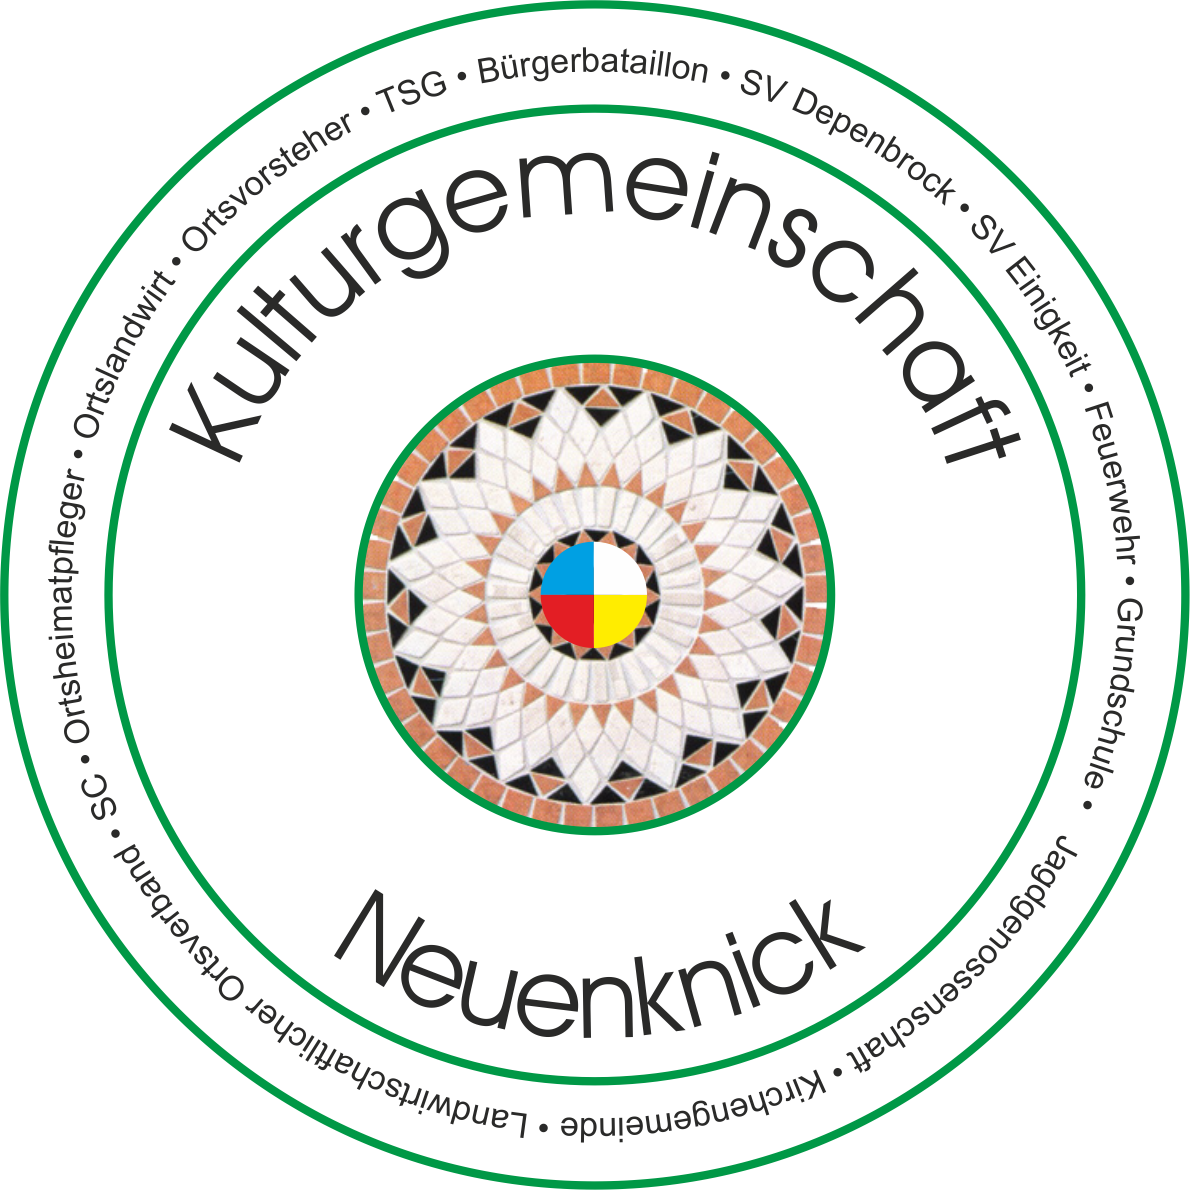 Kulturgemeinschaft Neuenknick e.V.